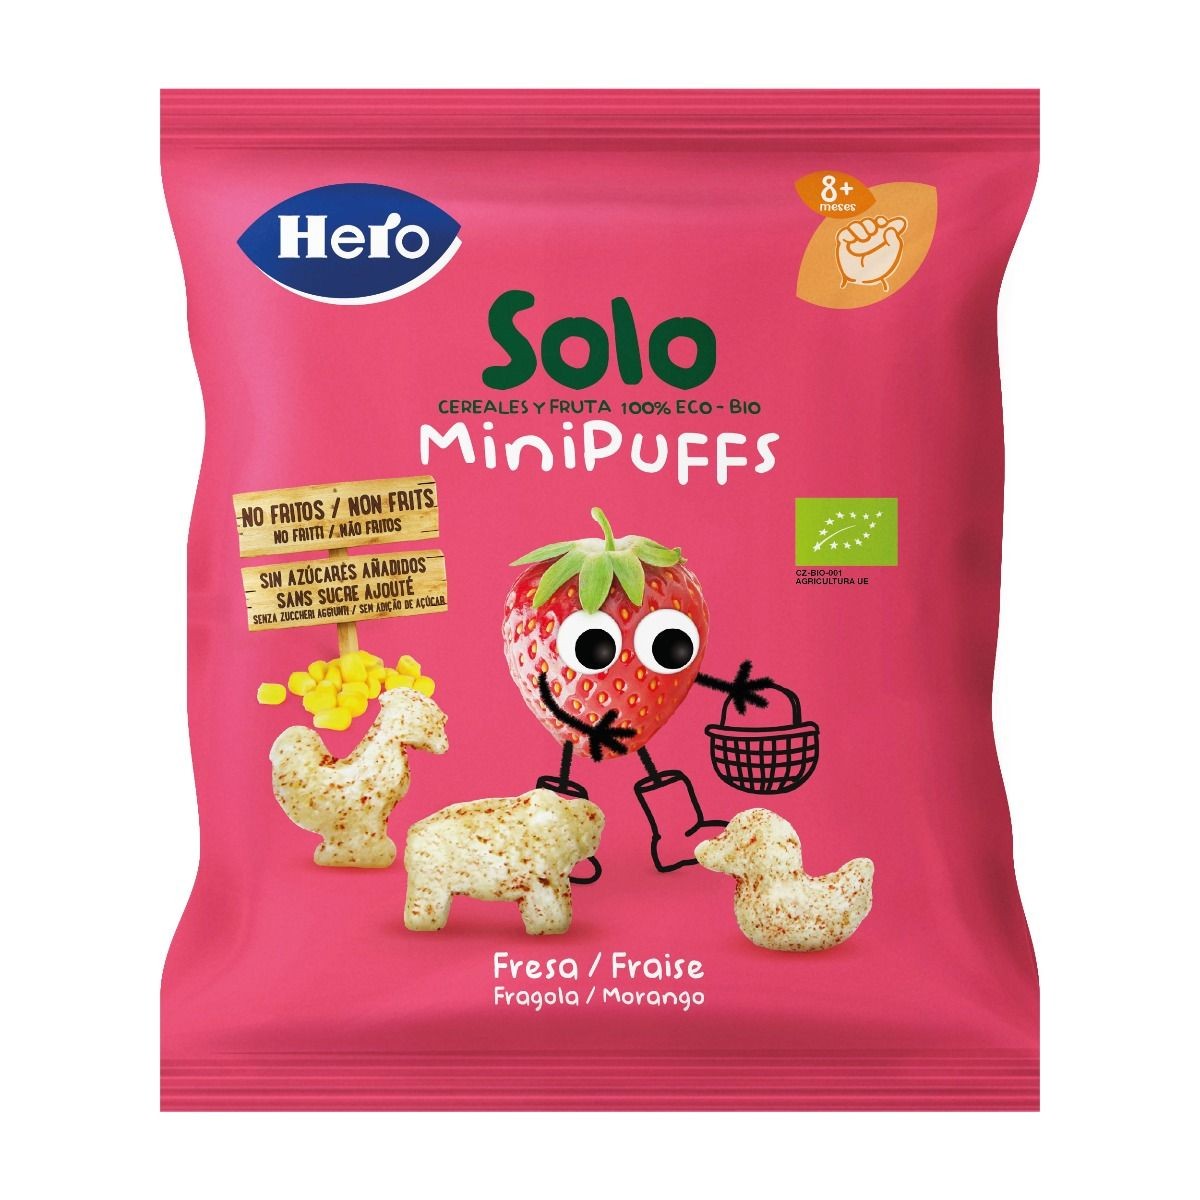 Biscuiti si pufuleti - Hero Solo Minipuffs Snacks Bio cu capsuni x 18 grame, medik-on.ro